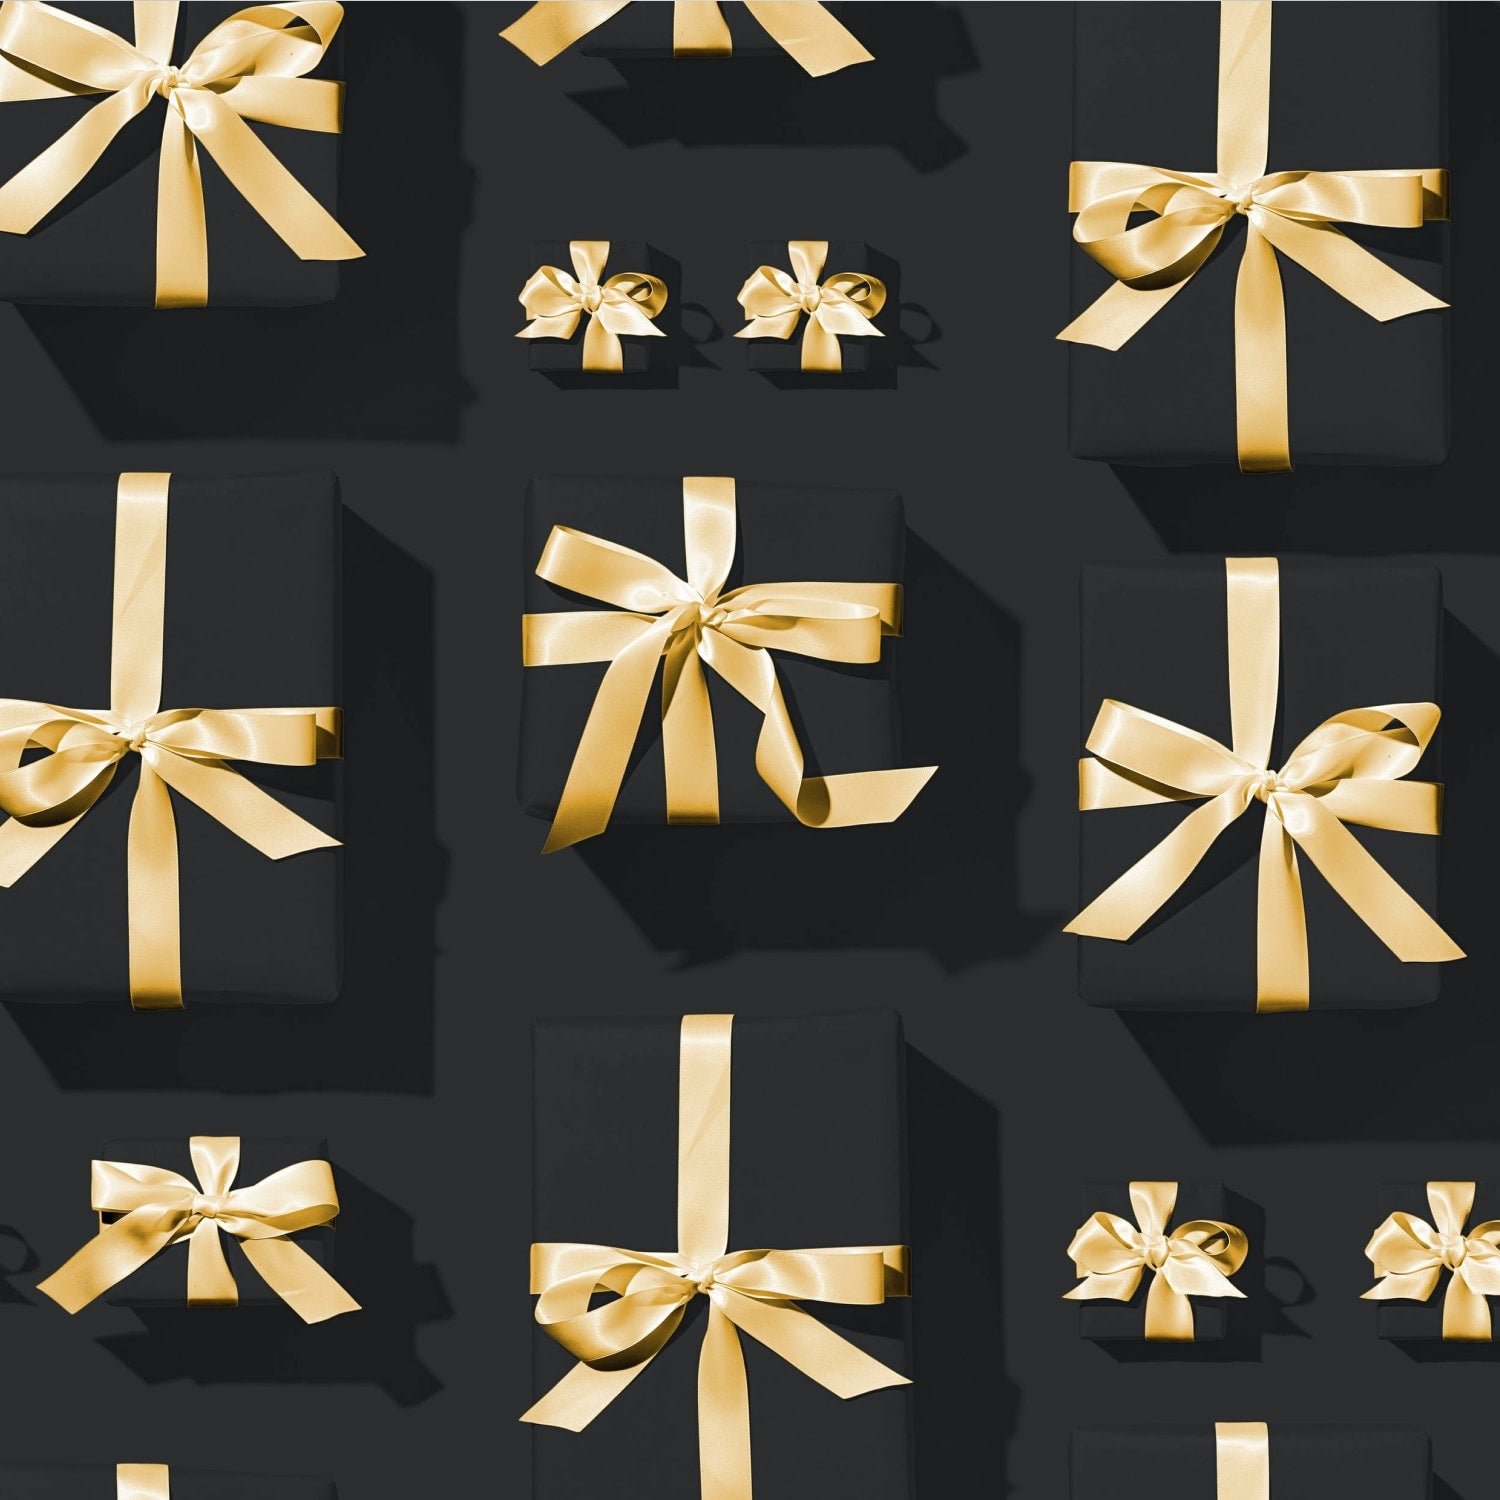 Verschieden große Geschenke in schwarzem Geschenkpapier mit einer Schleife aus goldenem Geschenkband